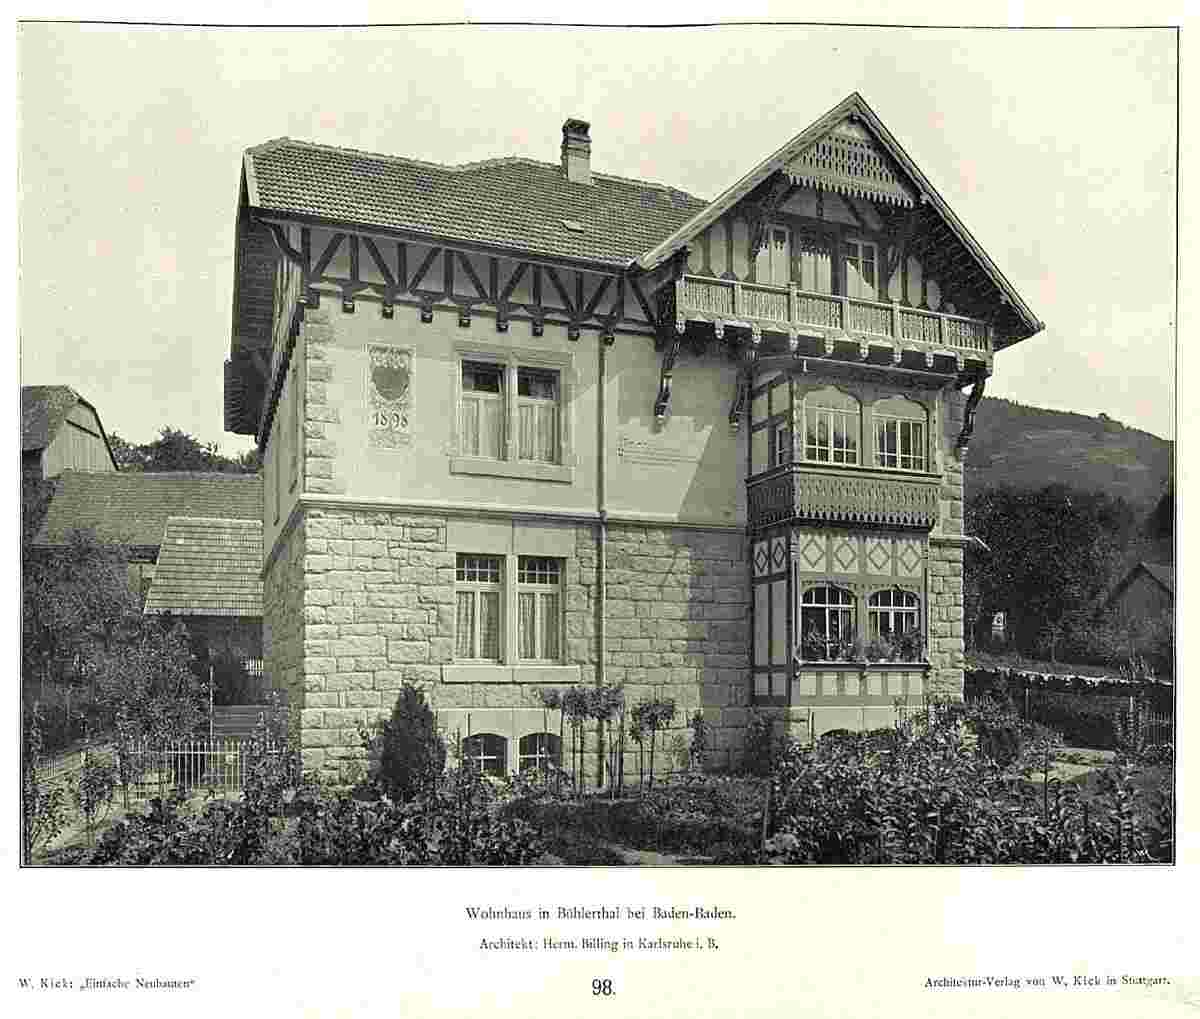 Bühlertal. Wohnhaus, Architekt Hermann Billing, erbaut 1898